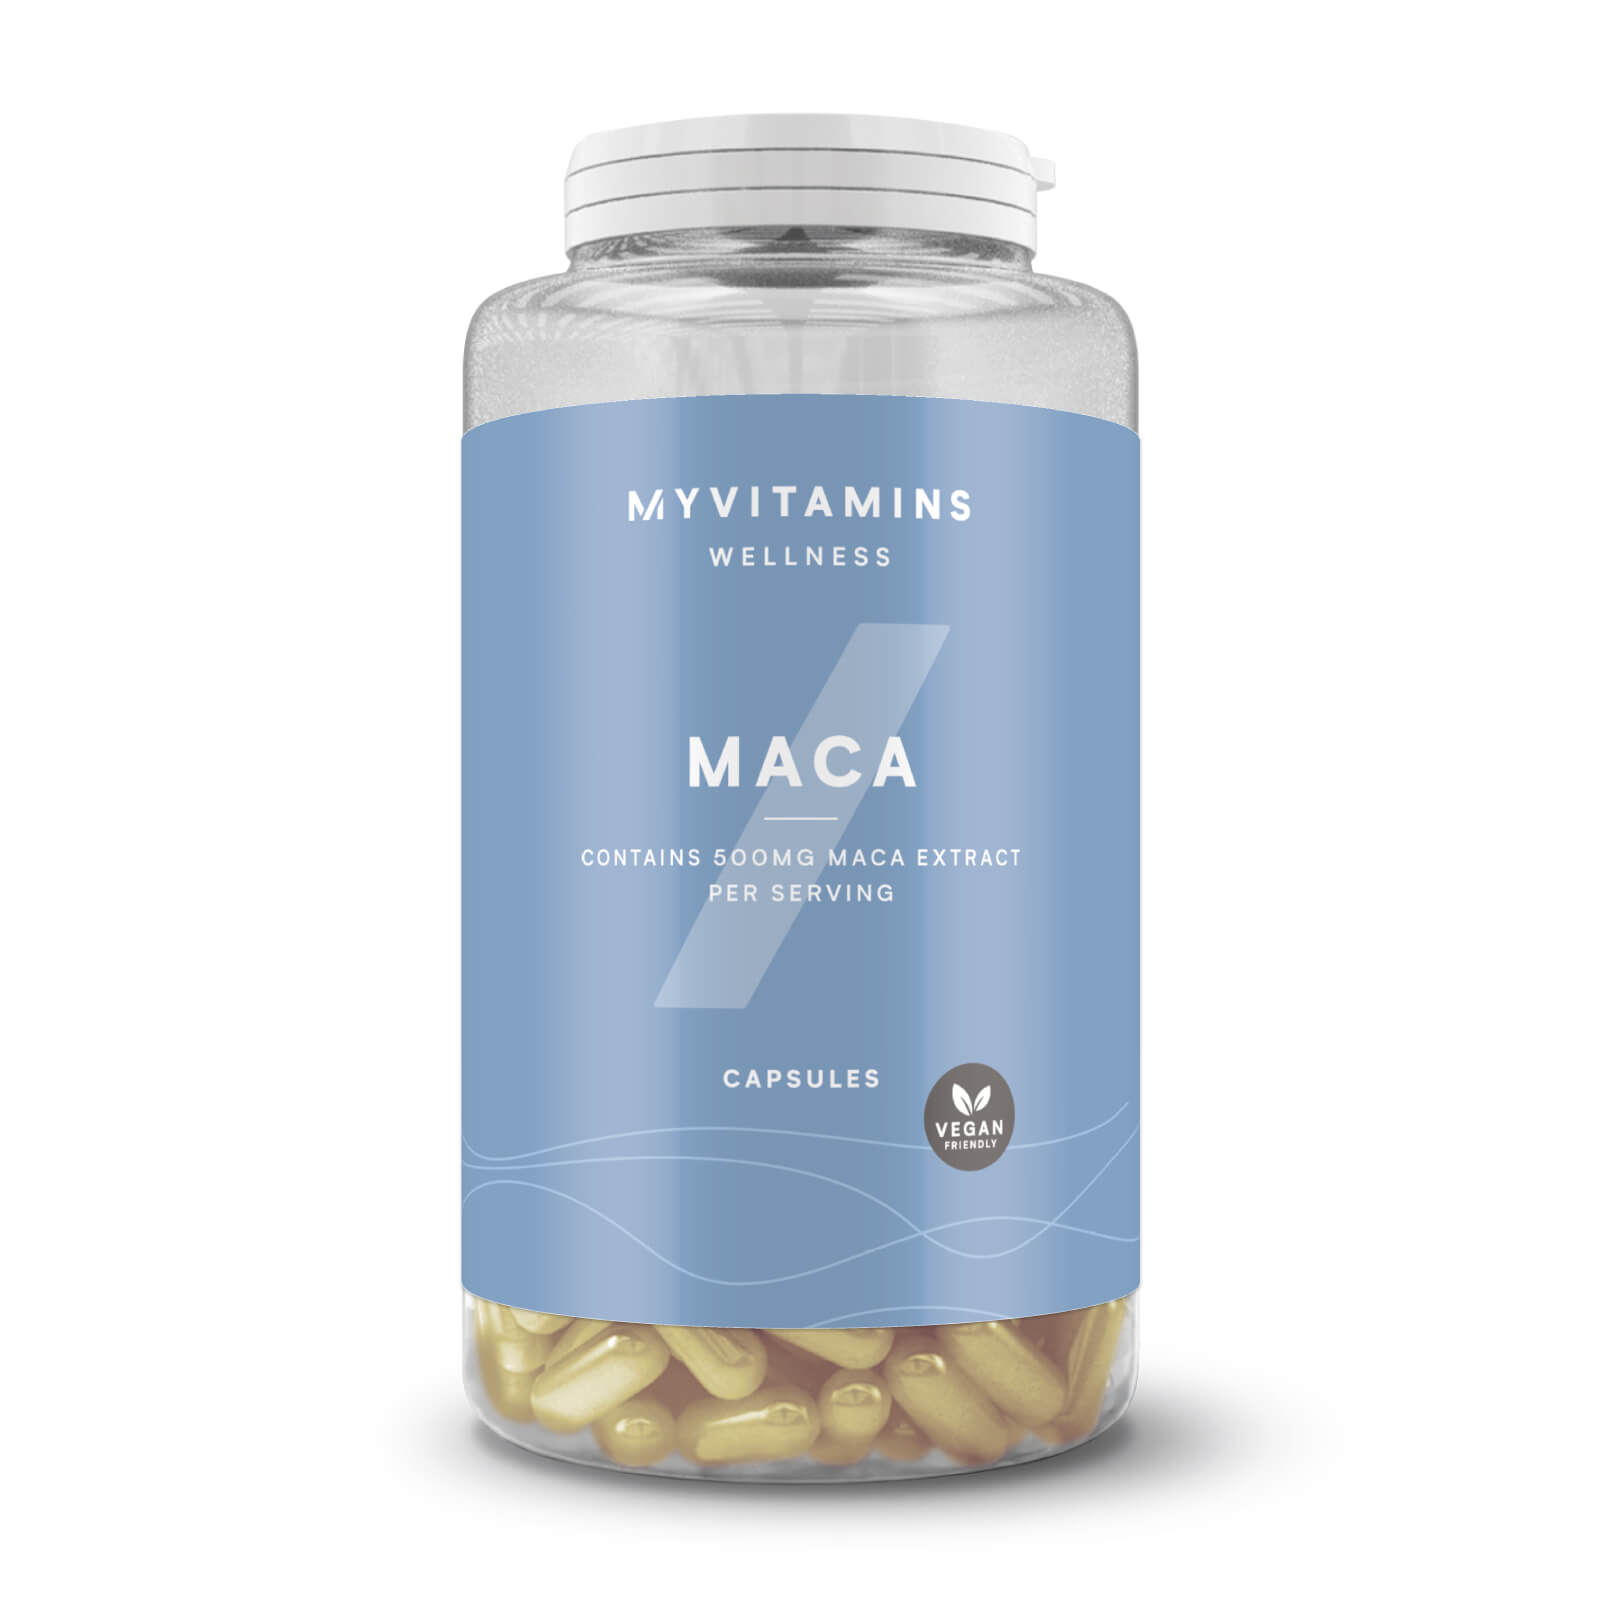 Myvitamins Maca Capsules - 30Capsules